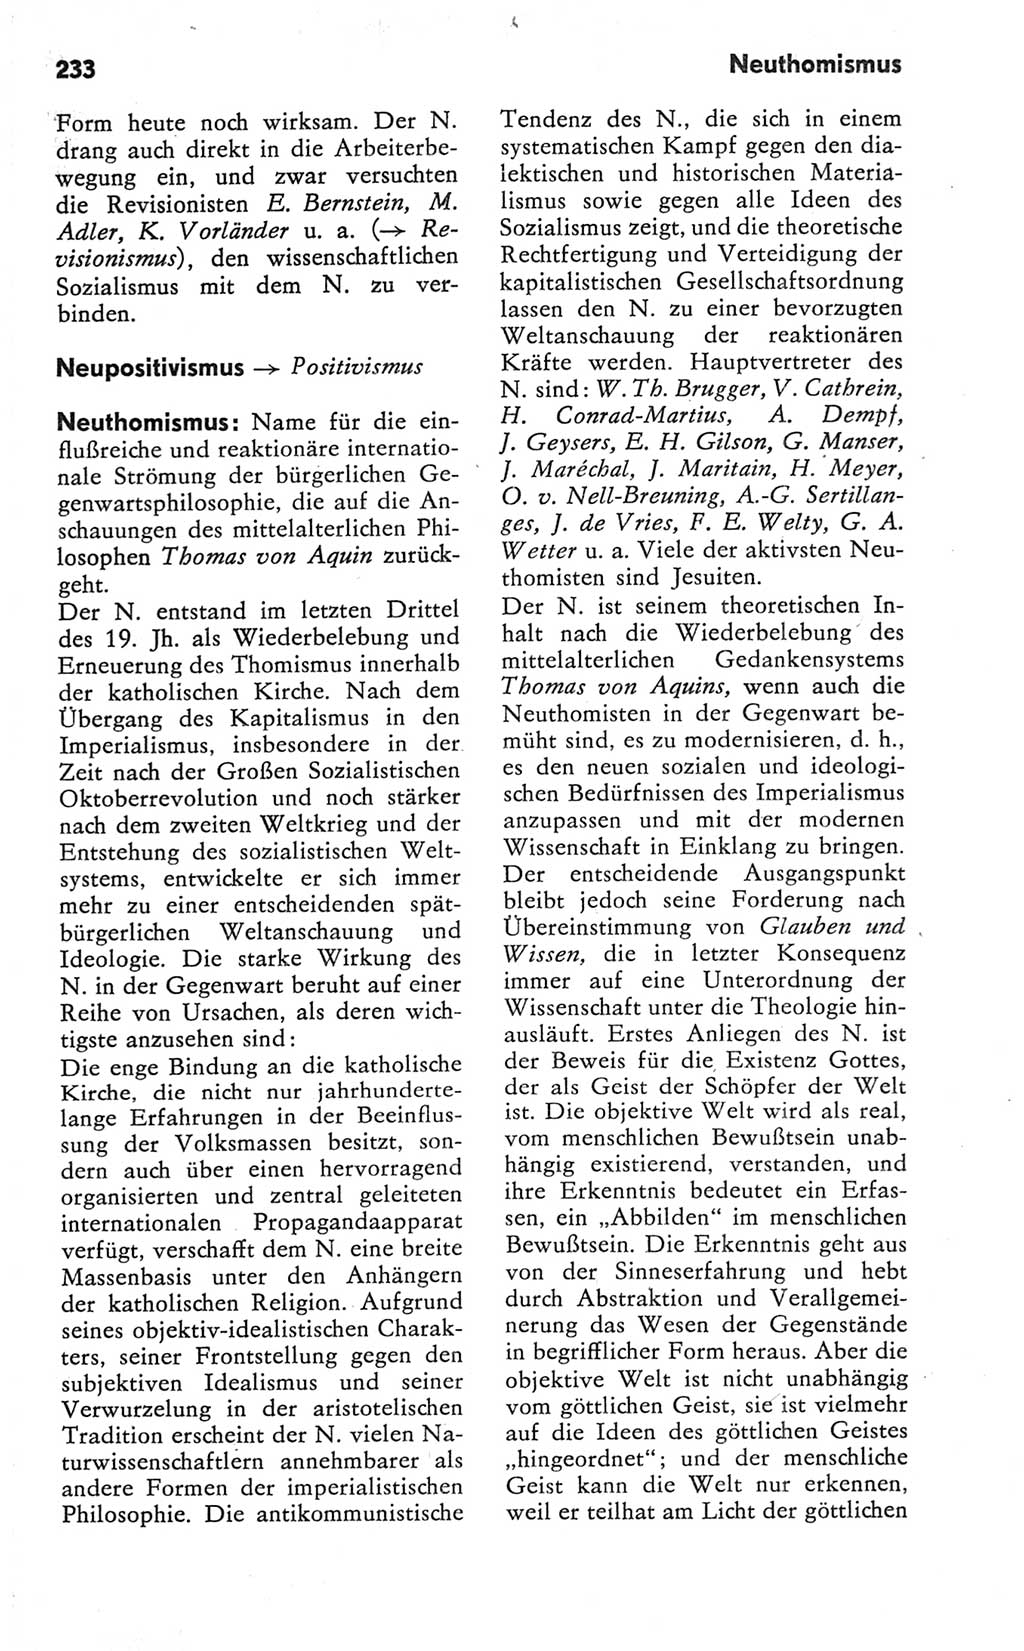 Kleines Wörterbuch der marxistisch-leninistischen Philosophie [Deutsche Demokratische Republik (DDR)] 1981, Seite 233 (Kl. Wb. ML Phil. DDR 1981, S. 233)